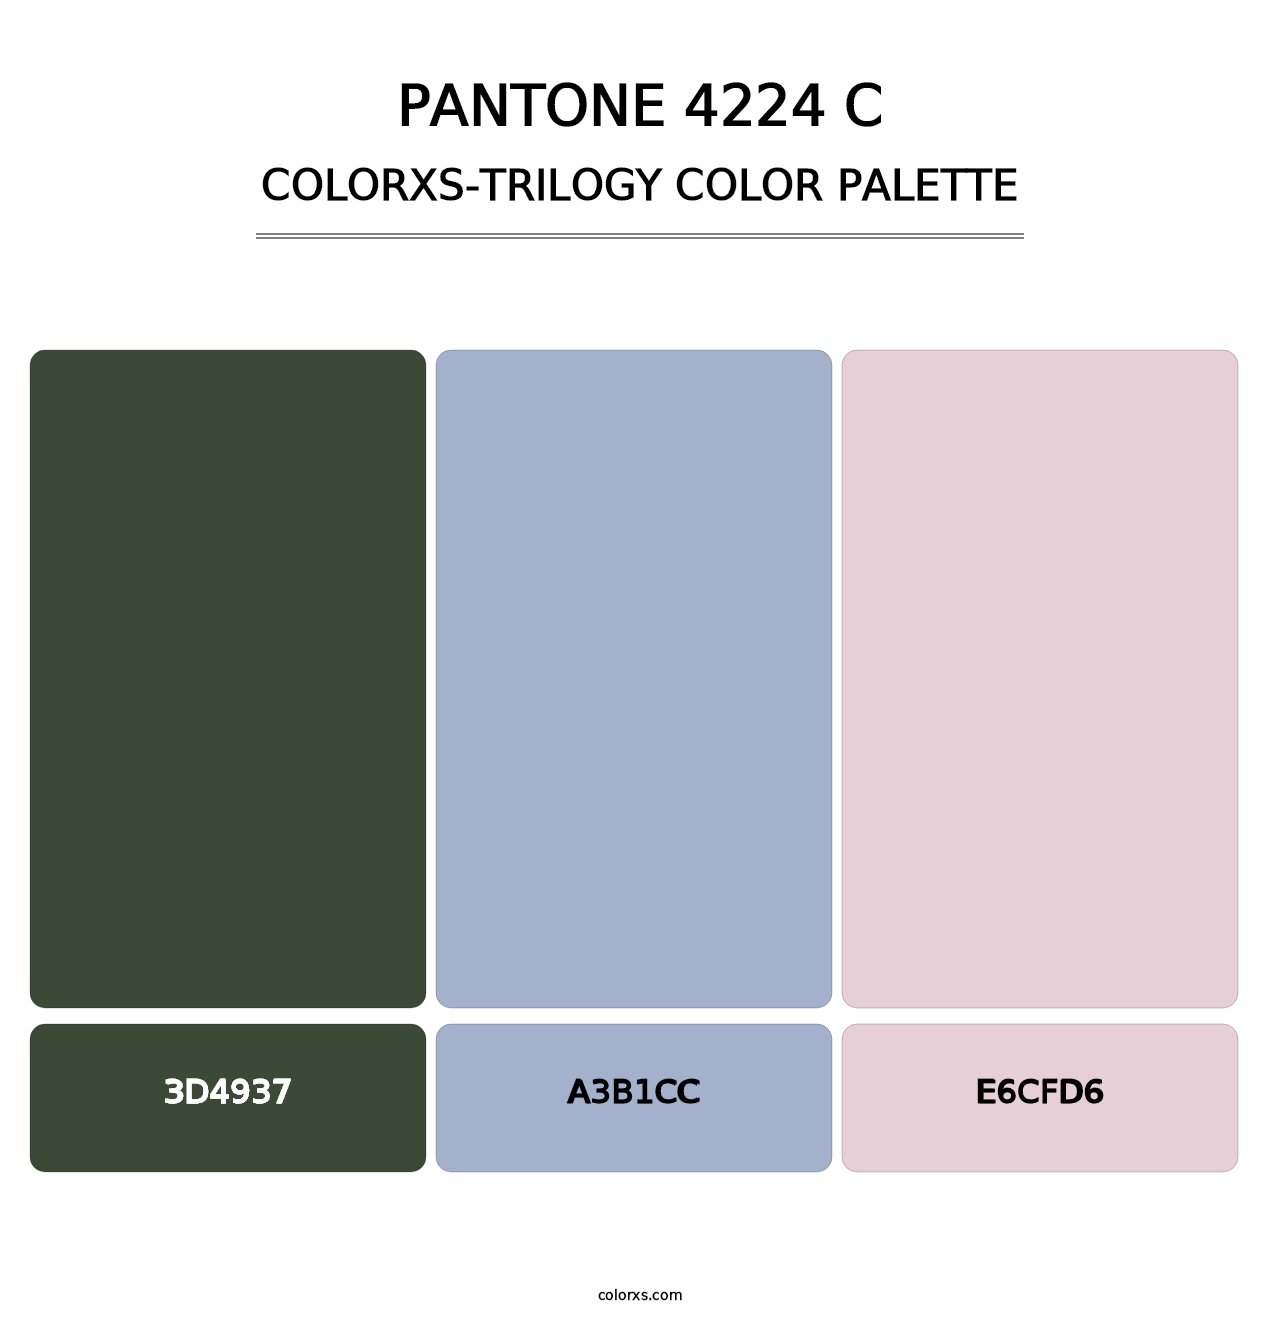 PANTONE 4224 C - Colorxs Trilogy Palette